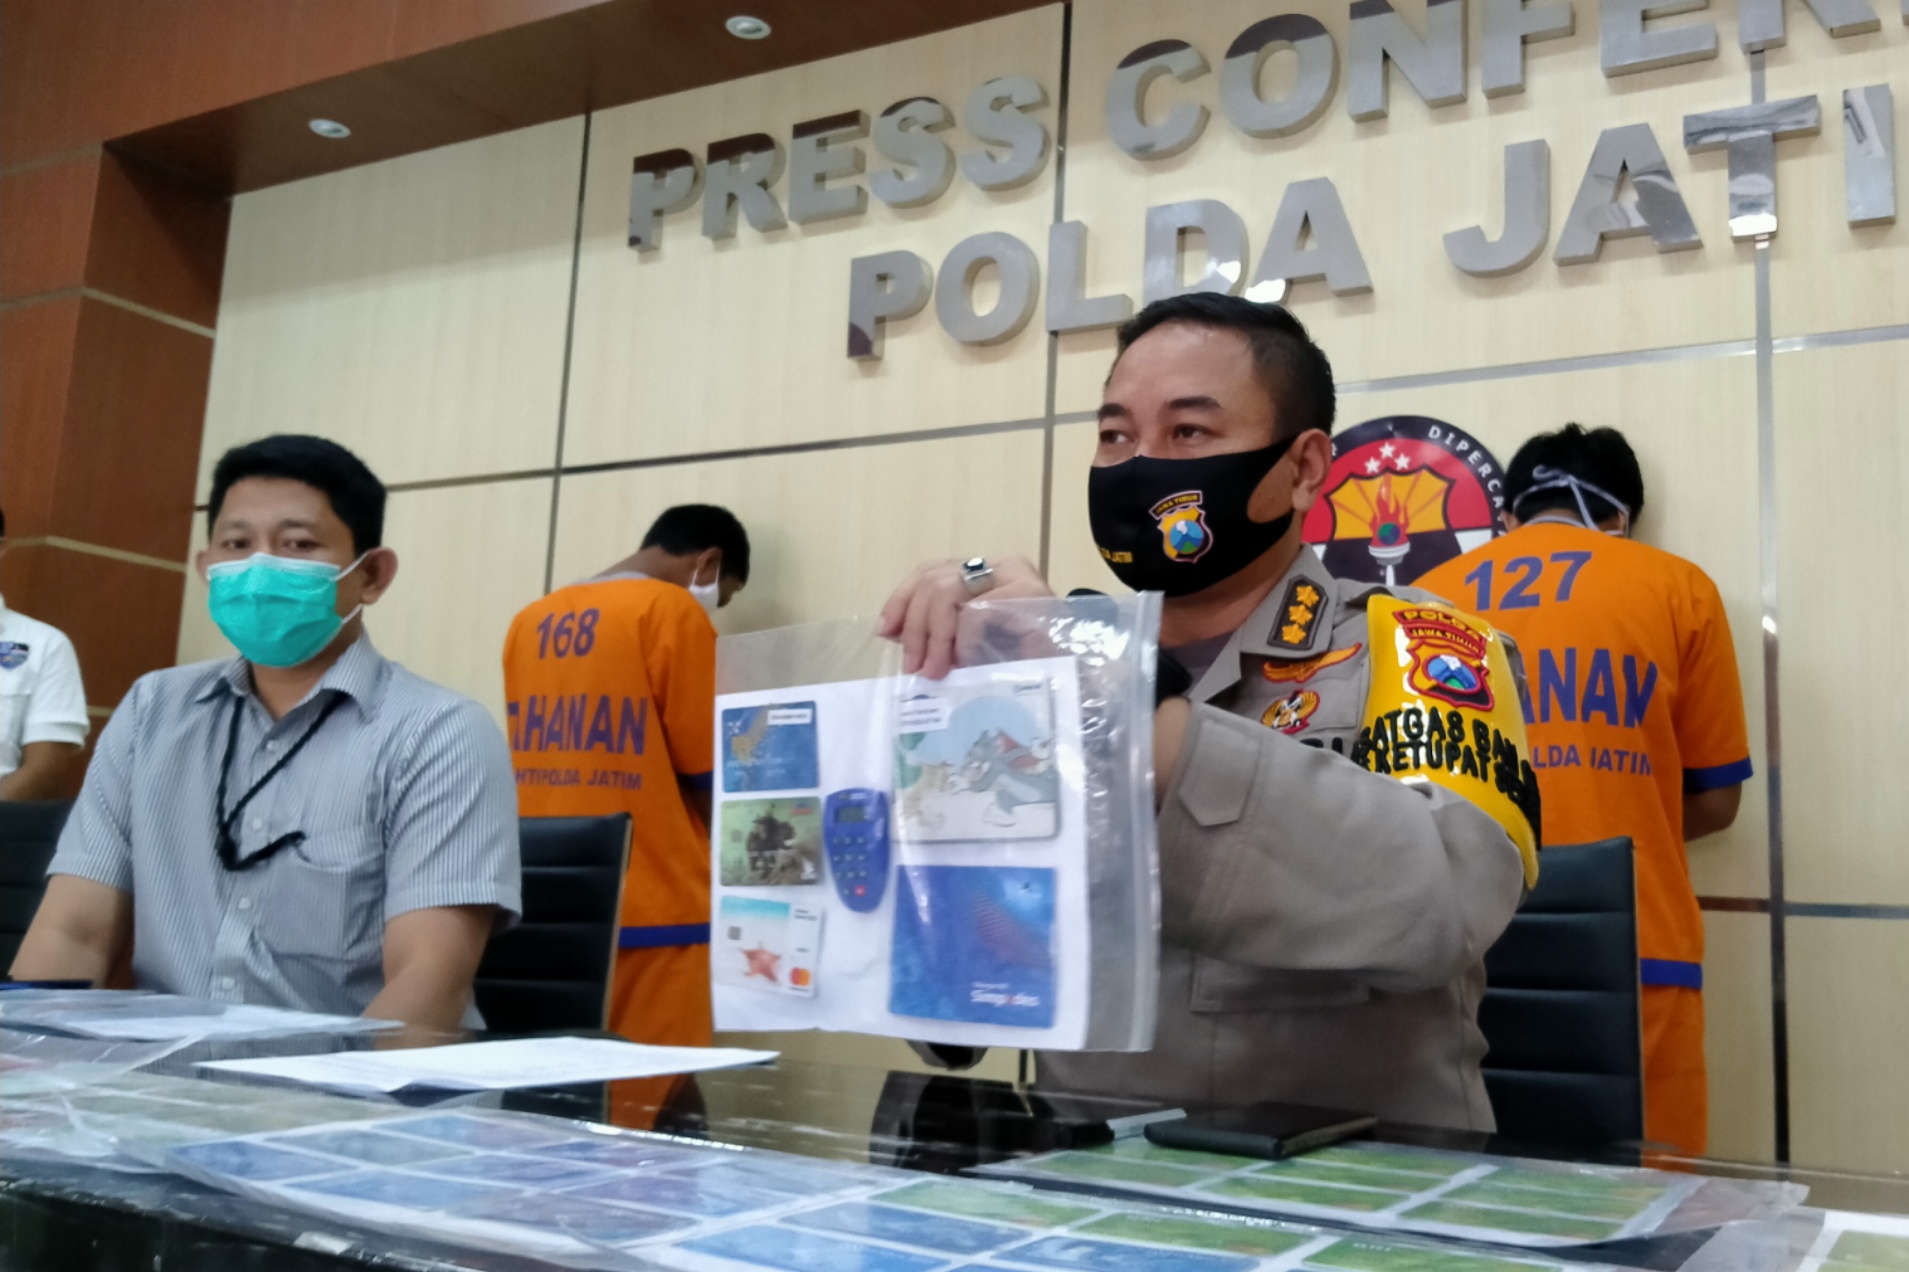 Kabid Humas Polda Jatim, Trunoyudo Wisnu Andiko menyampaikan pengungkapan kasus skamming di Polda Jatim, Surabaya, Senin 3 Mei 2020. (Foto: Fariz Yarbo/Ngopibareng.id)